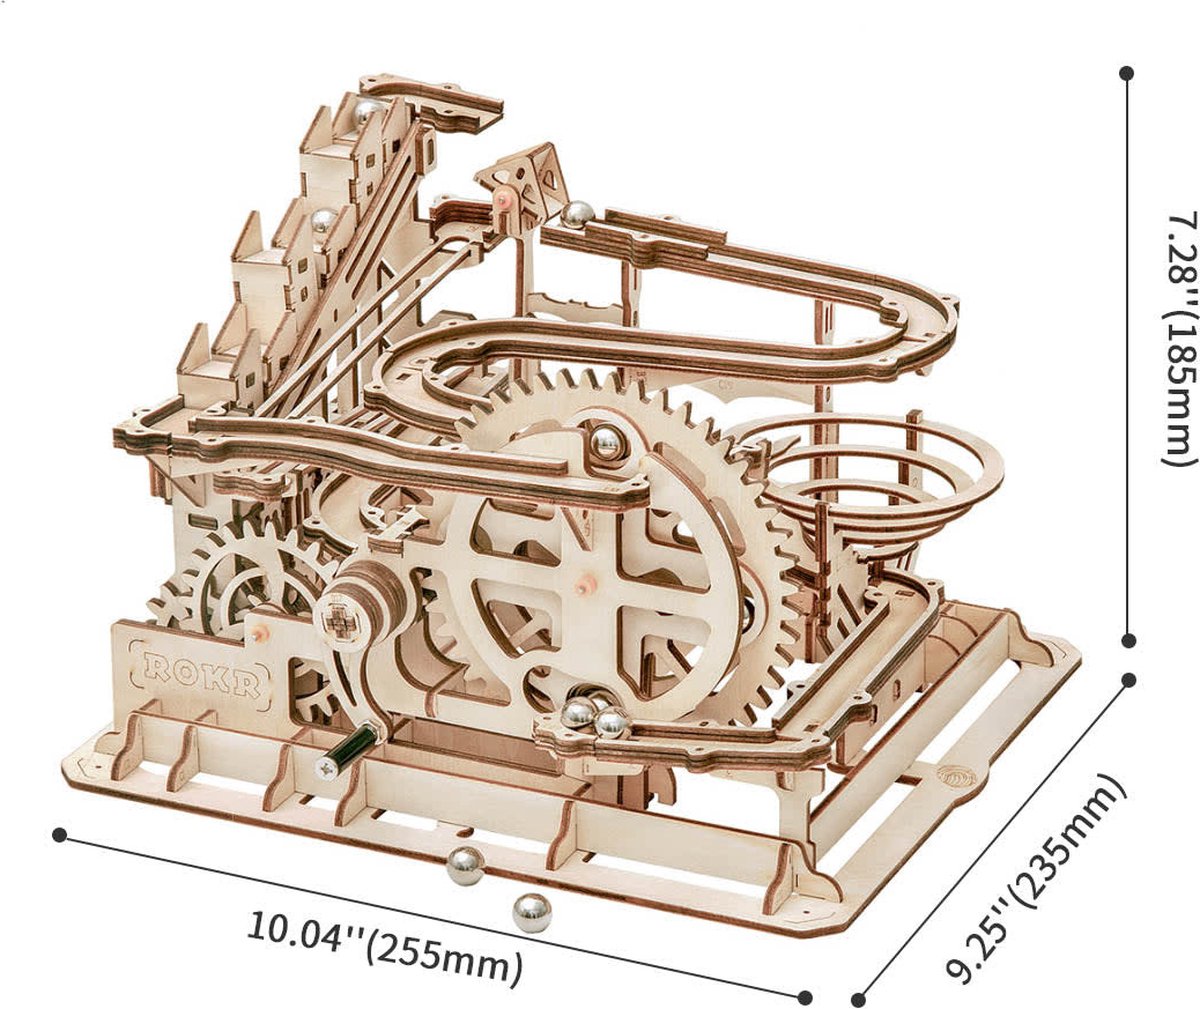 Kit de construction de maquette Robotime en bois - 185 mm de hauteur x 255  mm de